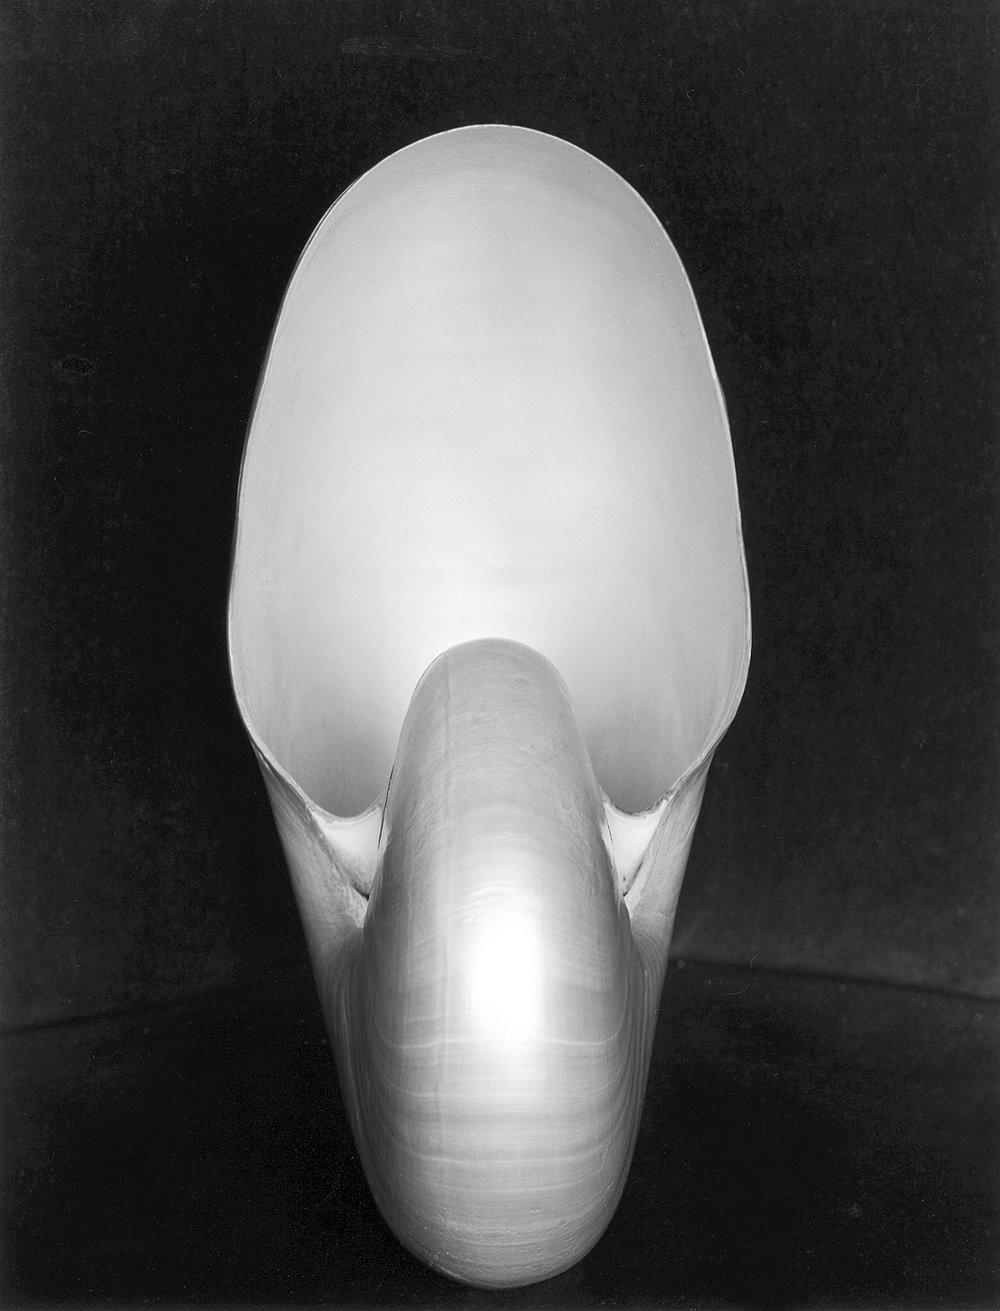 Наутилус, 1927. Фотограф Эдвард Уэстон